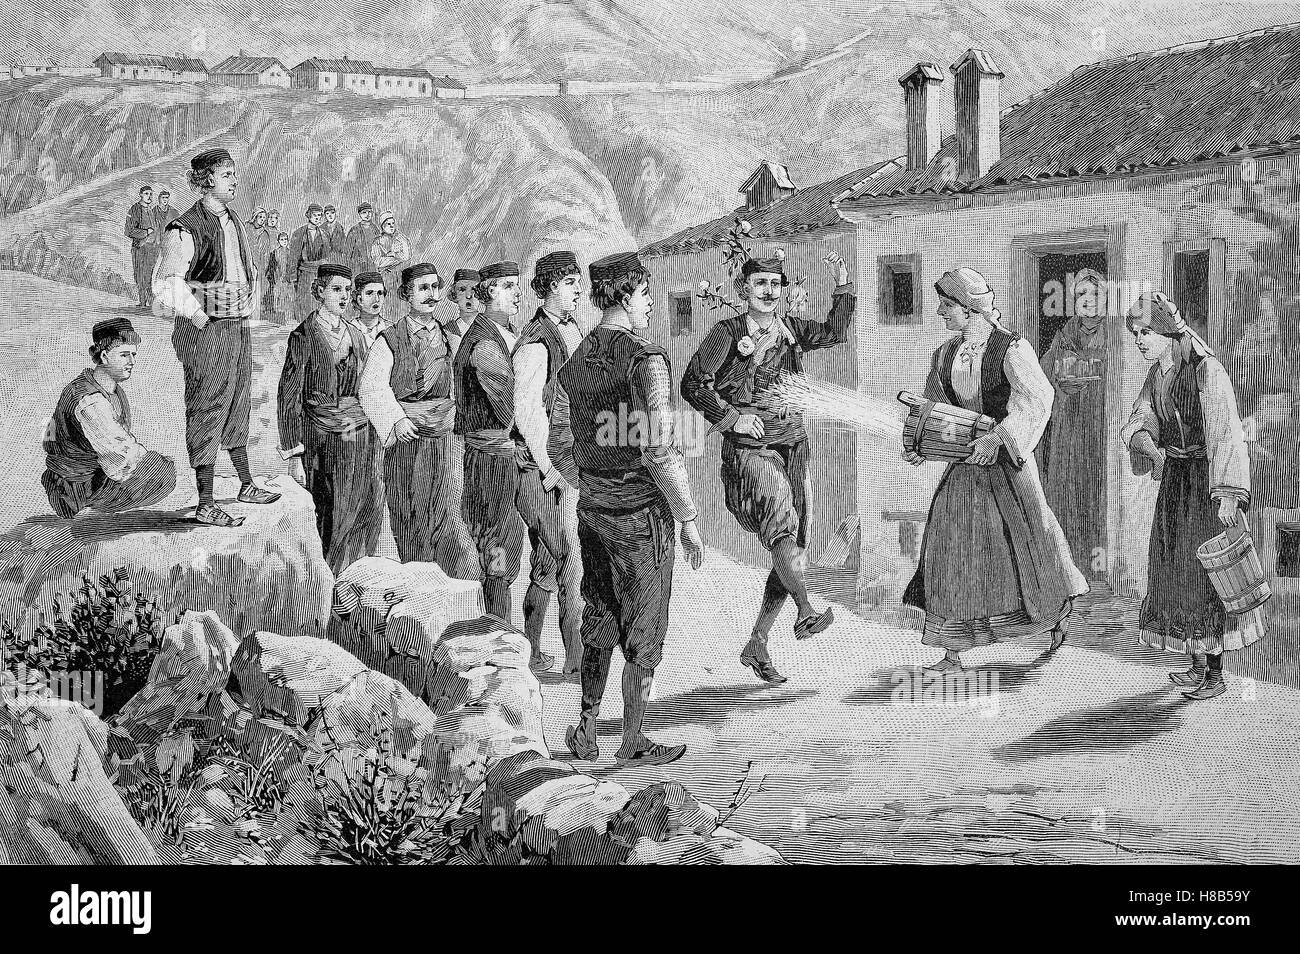 La célébration de la pluie en chantant dans la Dalmatie, gravure sur bois de 1892 Banque D'Images